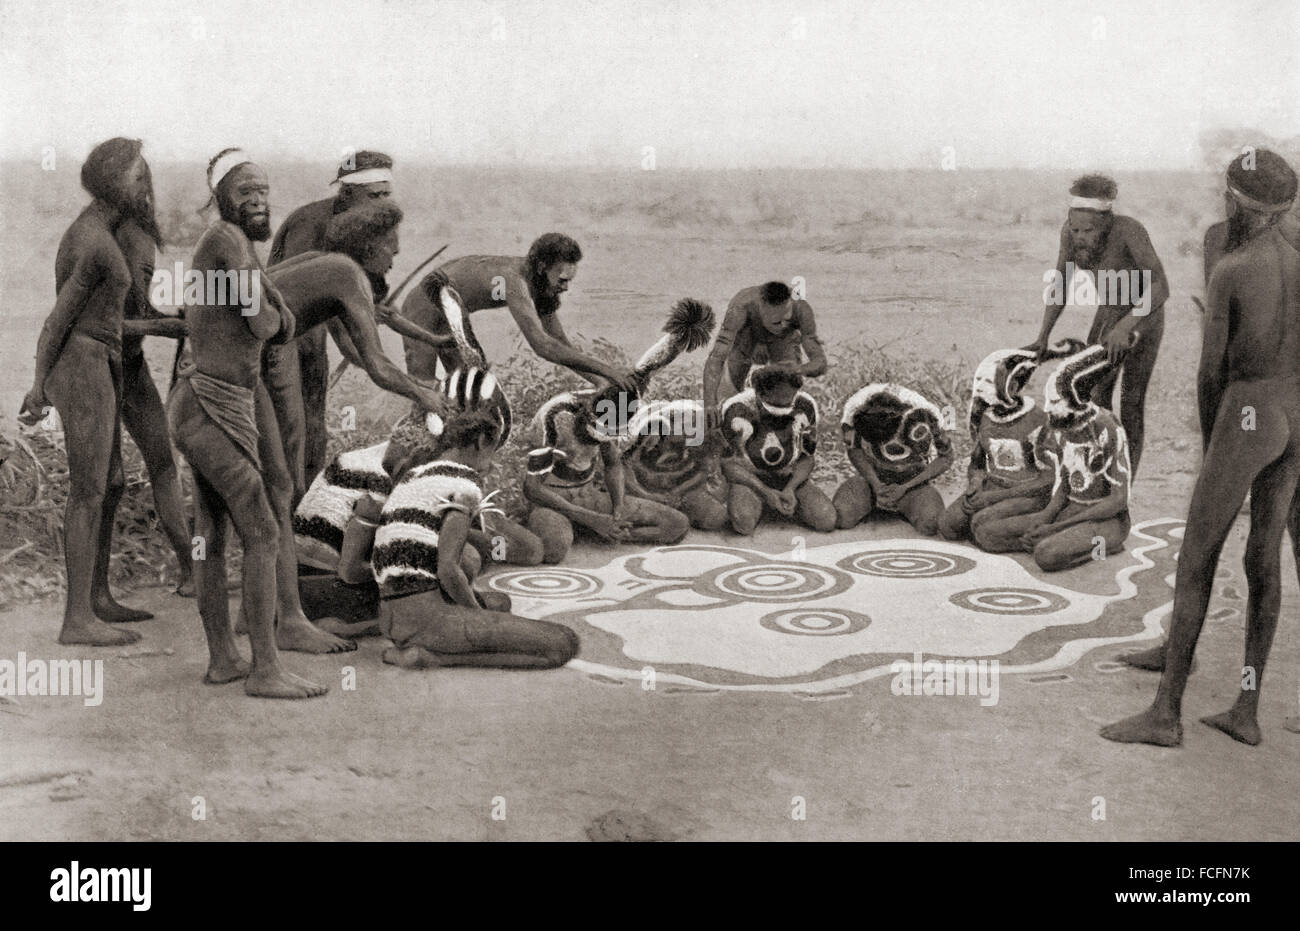 Une cérémonie totémique de la tribu Warramunga, Australie. La cérémonie finale dans le cadre de l'Wollunqua Totem de la tribu Warramunga. Les décorations sont prises au large des artistes interprètes ou exécutants. Le dessin représente les errances de l'ancêtre totem, un serpent mythique. Après une photographie du 19e siècle. Banque D'Images